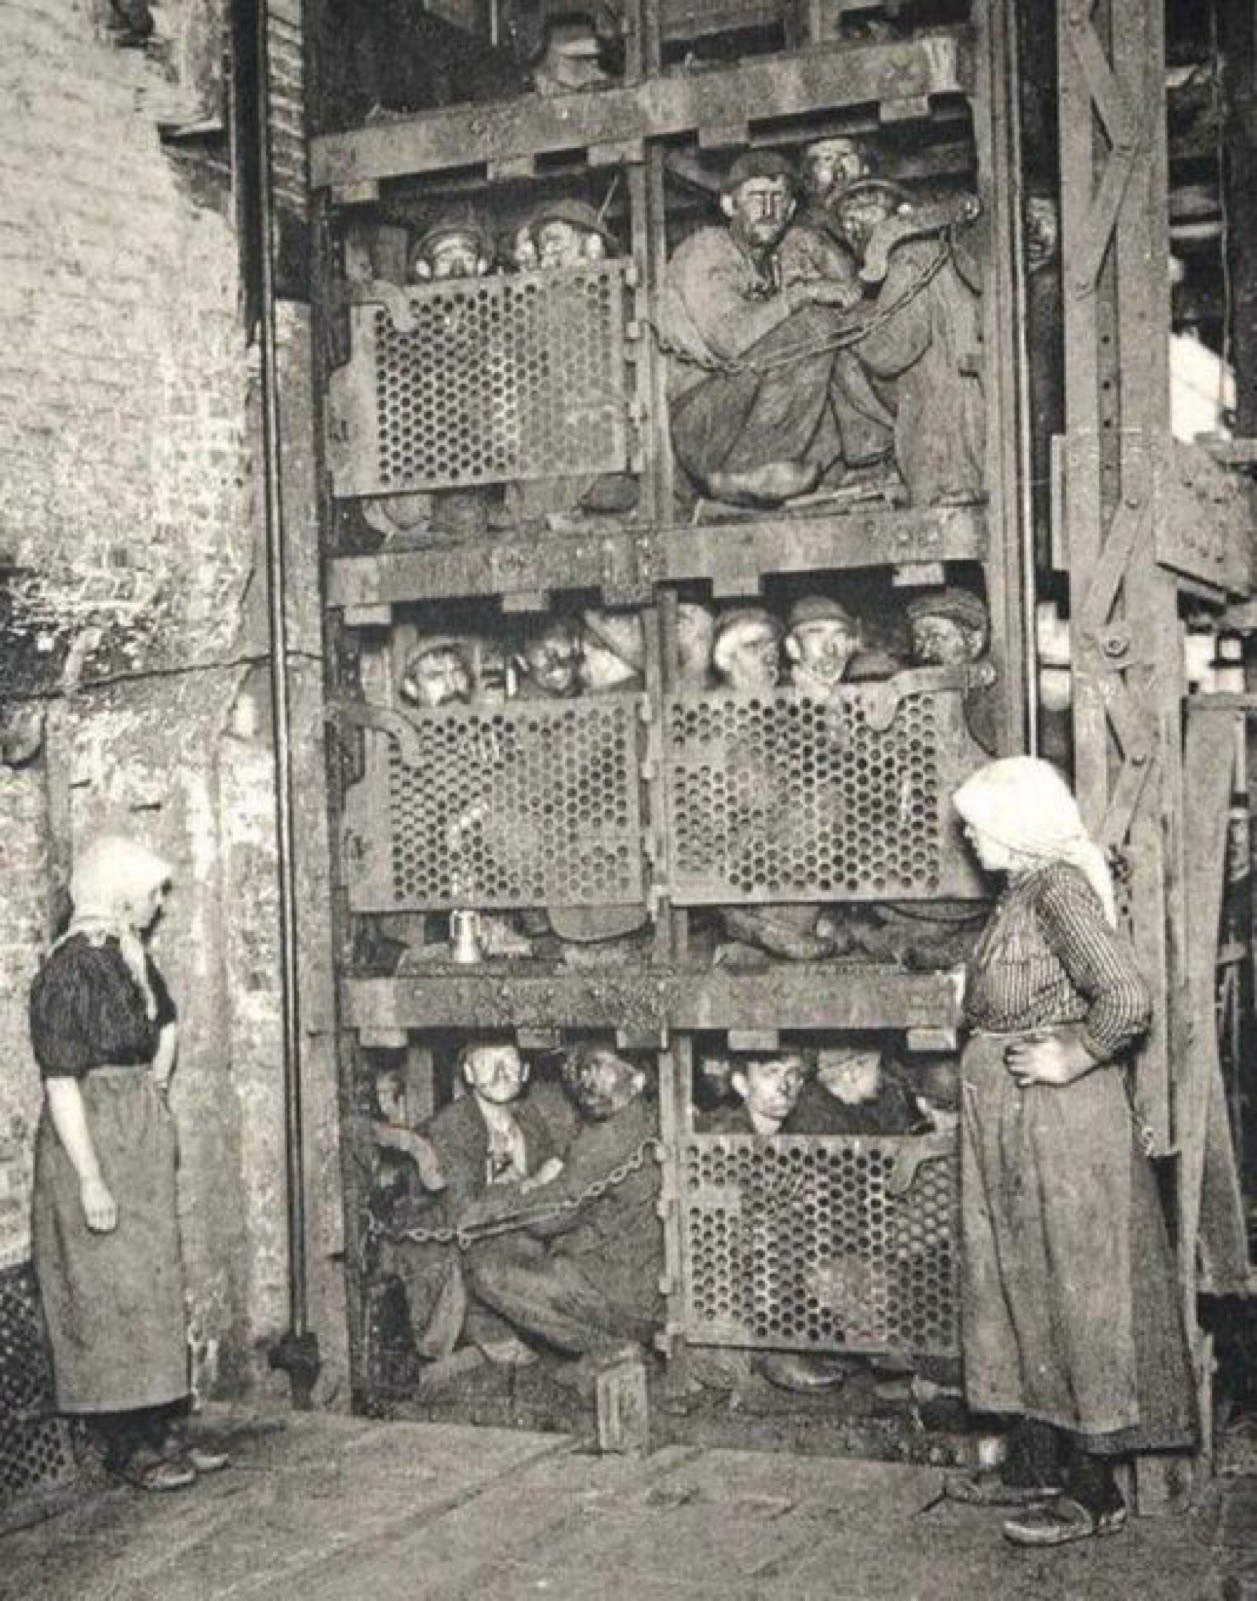 Une photographie historique en noir et blanc montre des mineurs entassés dans une cage d'ascenseur à face métallique. L'ascenseur est dans un cadre industriel, et deux femmes, debout à proximité, observent la scène.